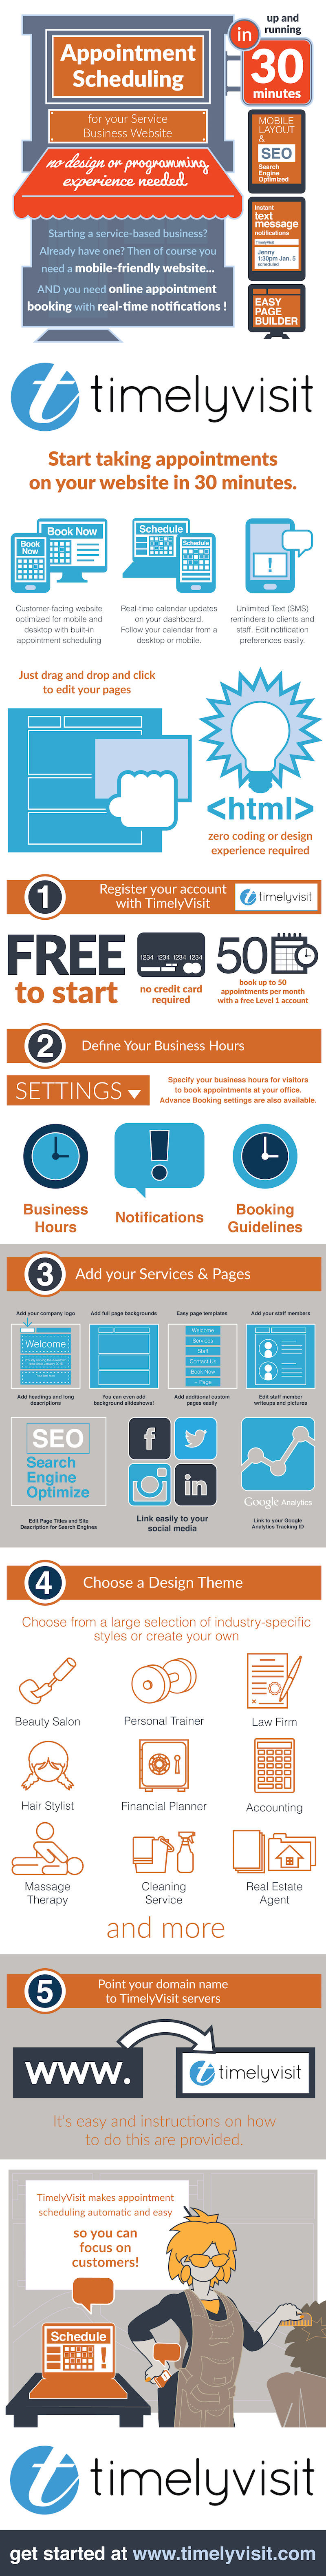 Create a service business website